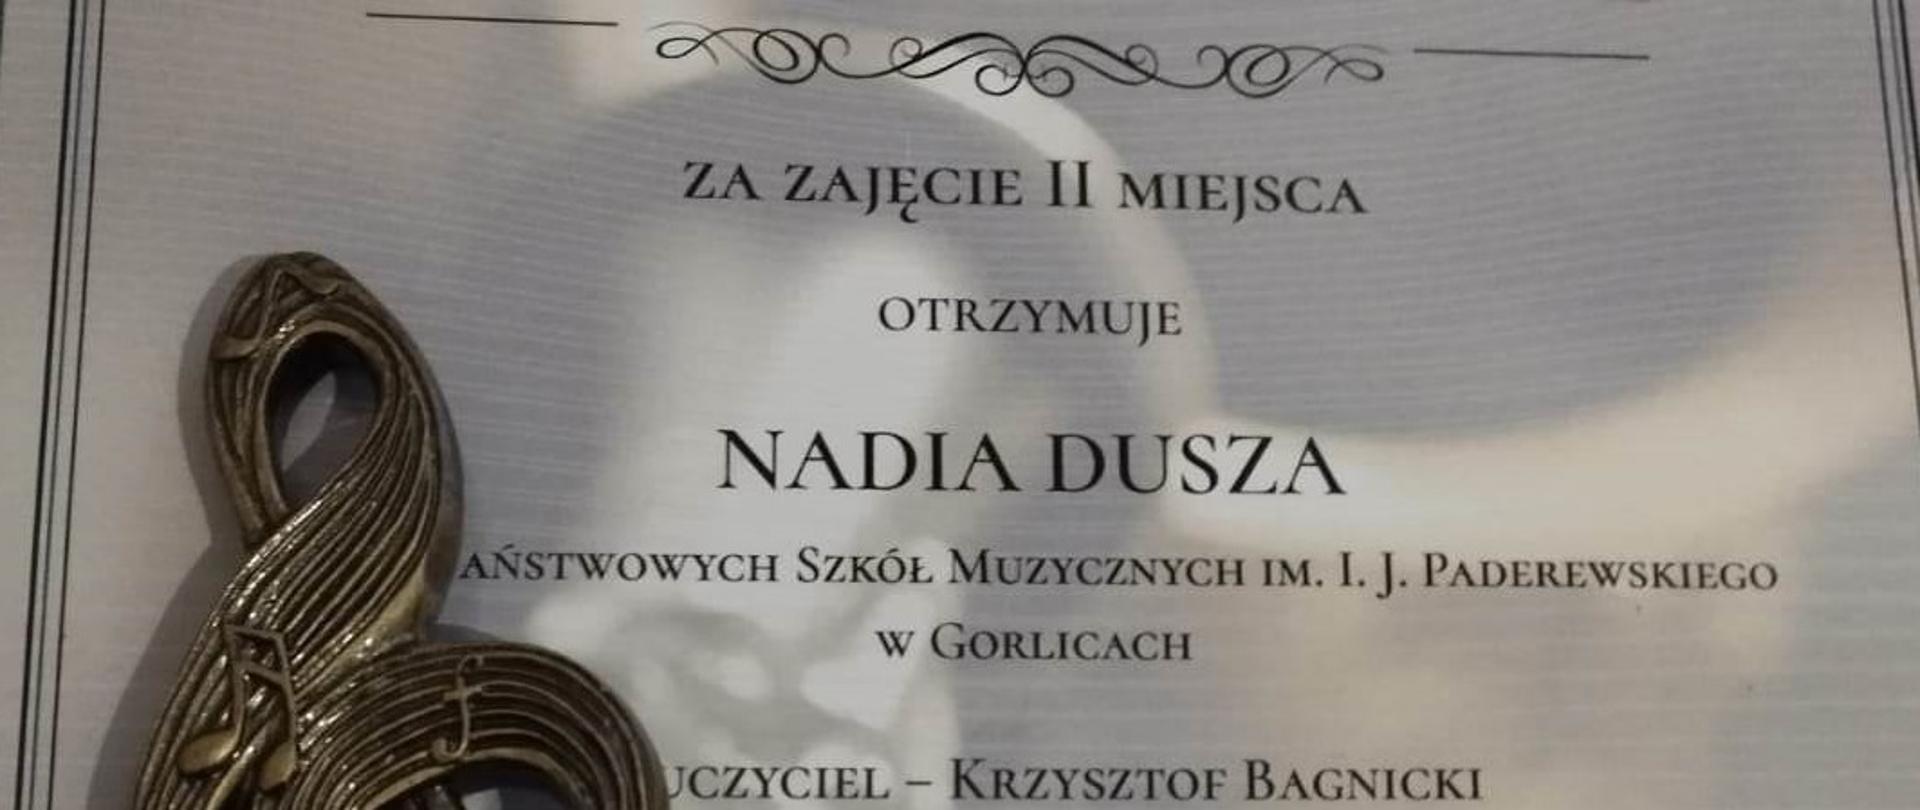 Dyplom za II Miejsce dla Nadii Duszy na konkursie saksofonowym w Jaworznie. 